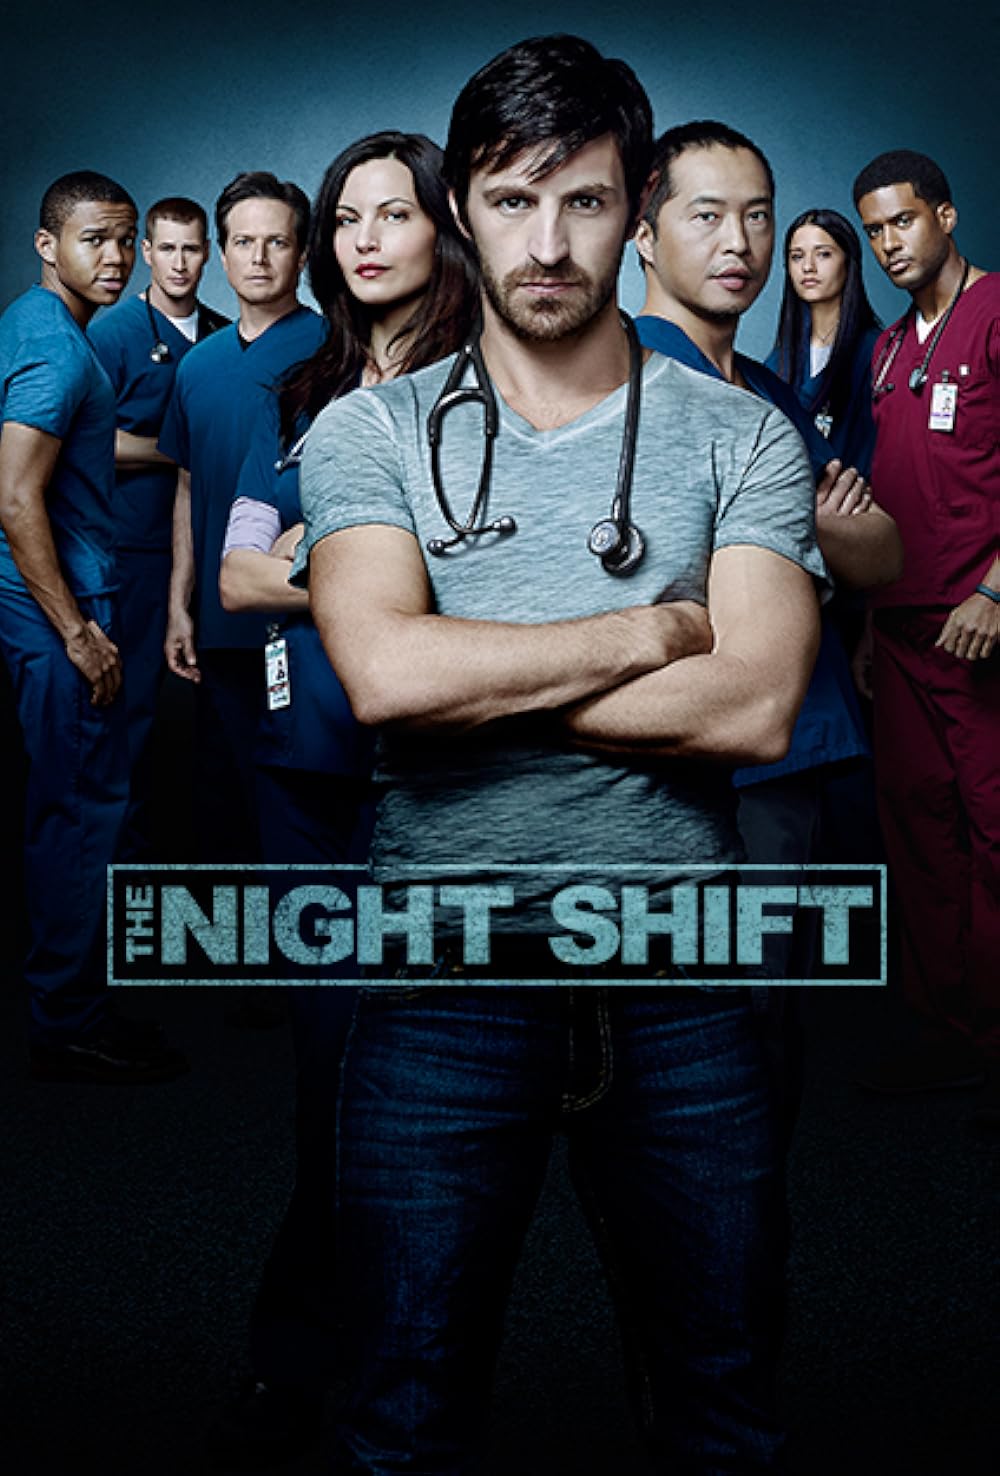 The Night Shift S01E01 HDTV x264LOL EZTV Download Torrent EZTV